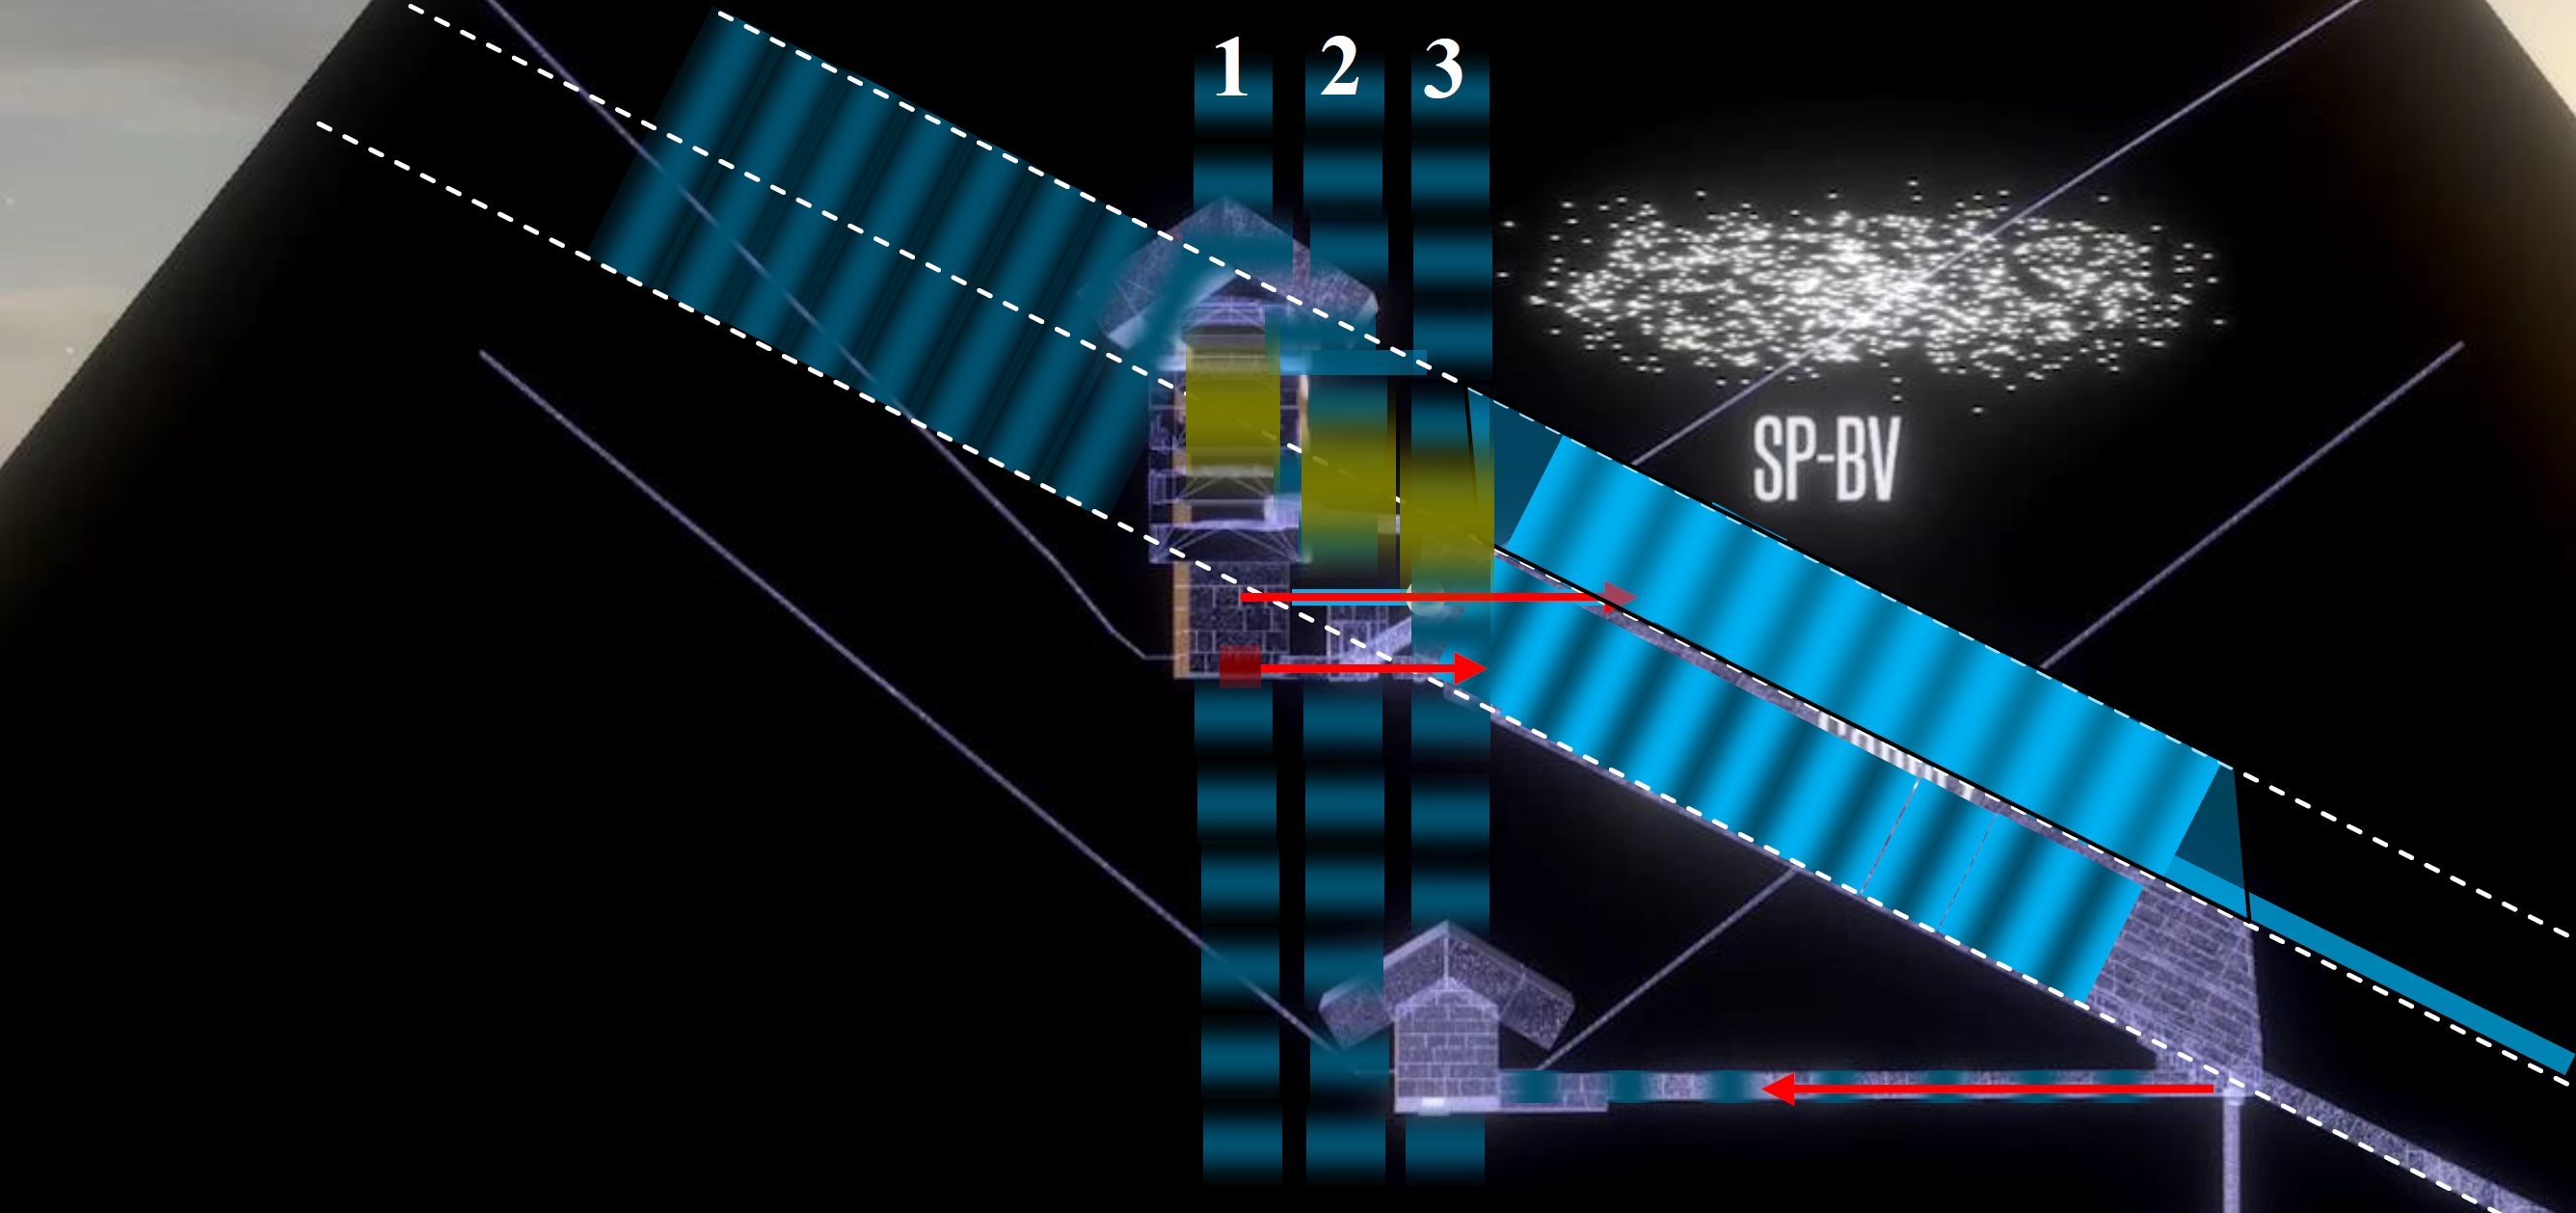 Рисунок 2 – Схематическое изображение камер пирамиды Хуфу с предполагаемым помещением (по результатам исследования группы ученых проекта Scan Pyramids) и модель расположения предполагаемой галереи с отображением плоских волн неизвестной природы: 1 – волны камеры Царя, 2 – волны подземной камеры, 3 – волны камеры Царицы. Желтым цветом обозначены возможные зоны относительно высокой температуры